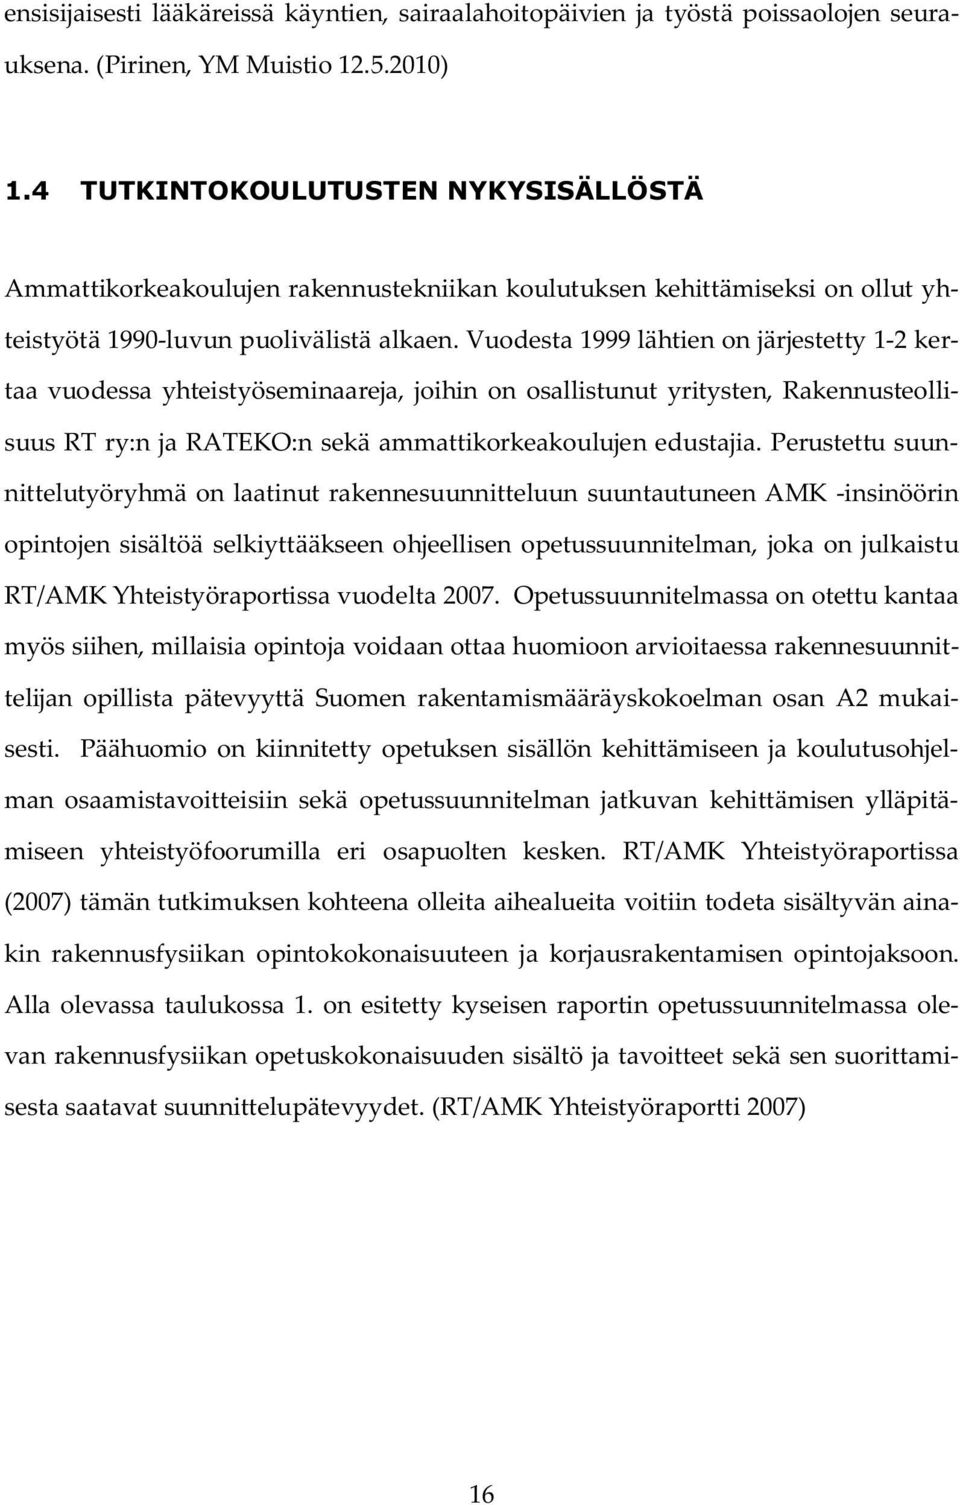 Vuodesta 1999 lähtien on järjestetty 1-2 kertaa vuodessa yhteistyöseminaareja, joihin on osallistunut yritysten, Rakennusteollisuus RT ry:n ja RATEKO:n sekä ammattikorkeakoulujen edustajia.